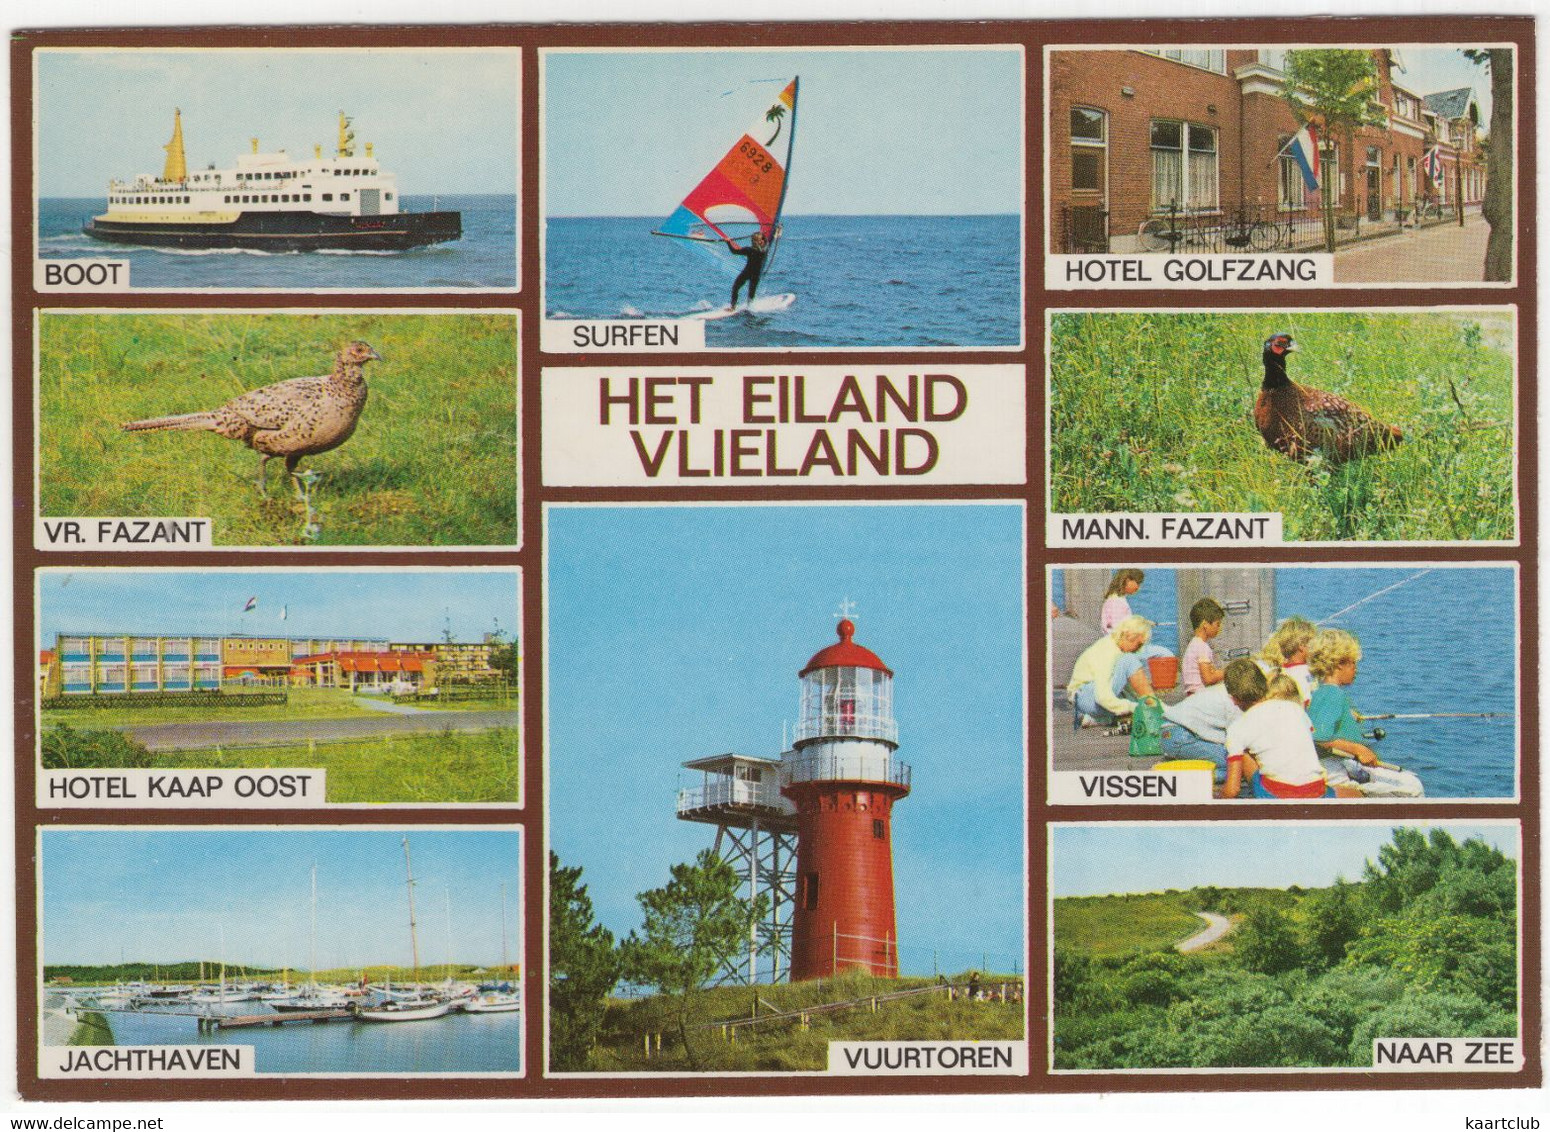 Eiland Vlieland: Boot, Surfen, Hotel Golfzang, Kaap Oost, Vuurtoren, Fazant, Jachthaven (Nederland/Holland) - Nr. VLD 63 - Vlieland